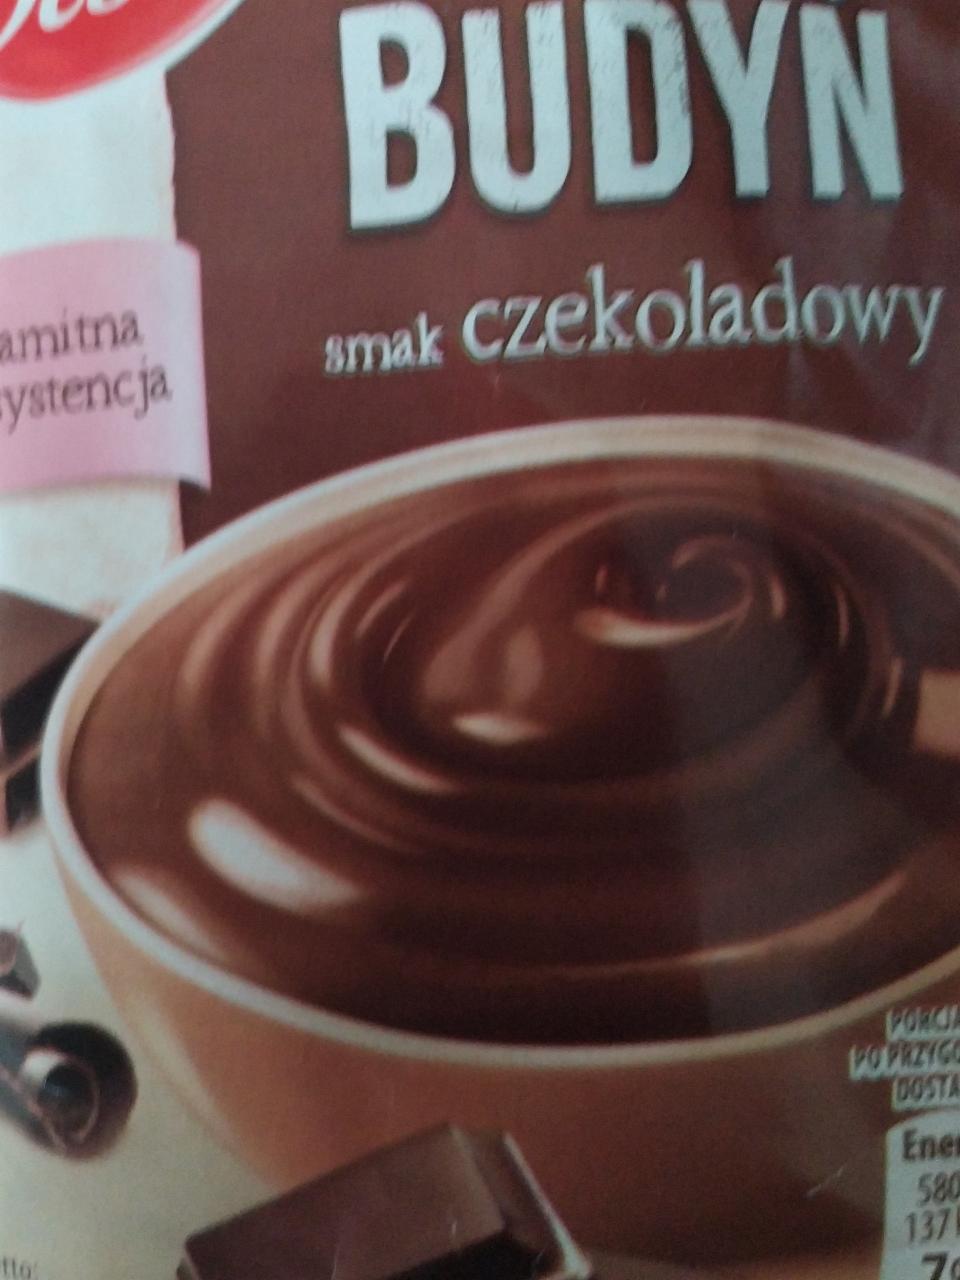 Fotografie - Budyń smak czekoladowy